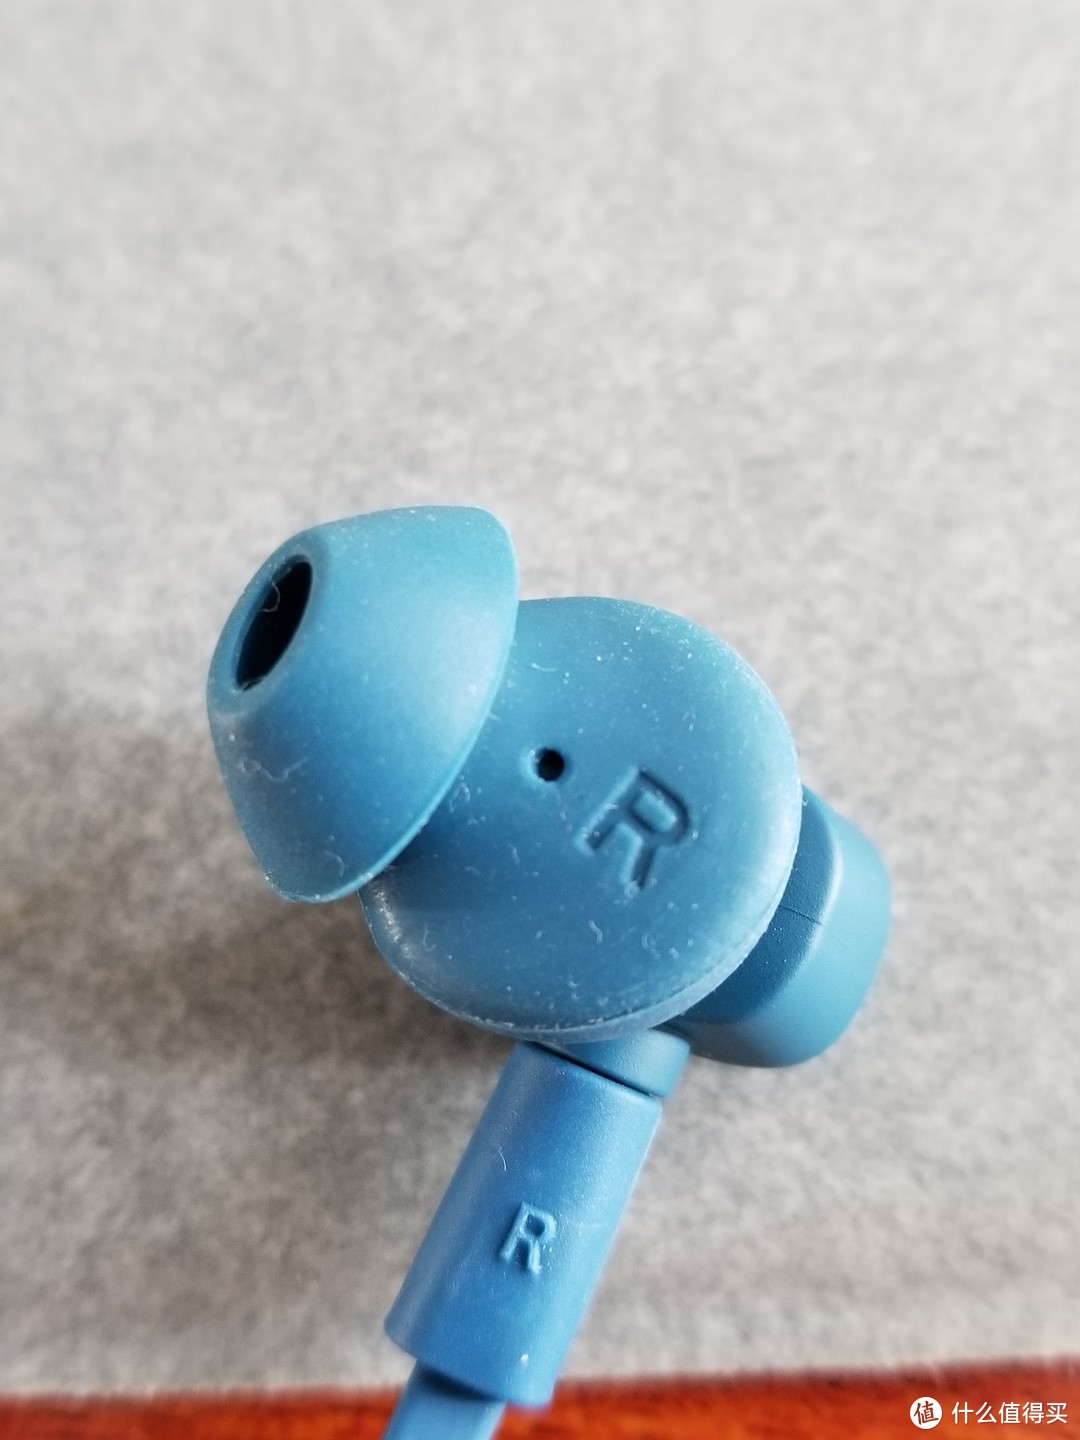 一副合格的蓝牙耳机—— Macaw脉歌 TX-80挂脖式蓝牙运动耳机